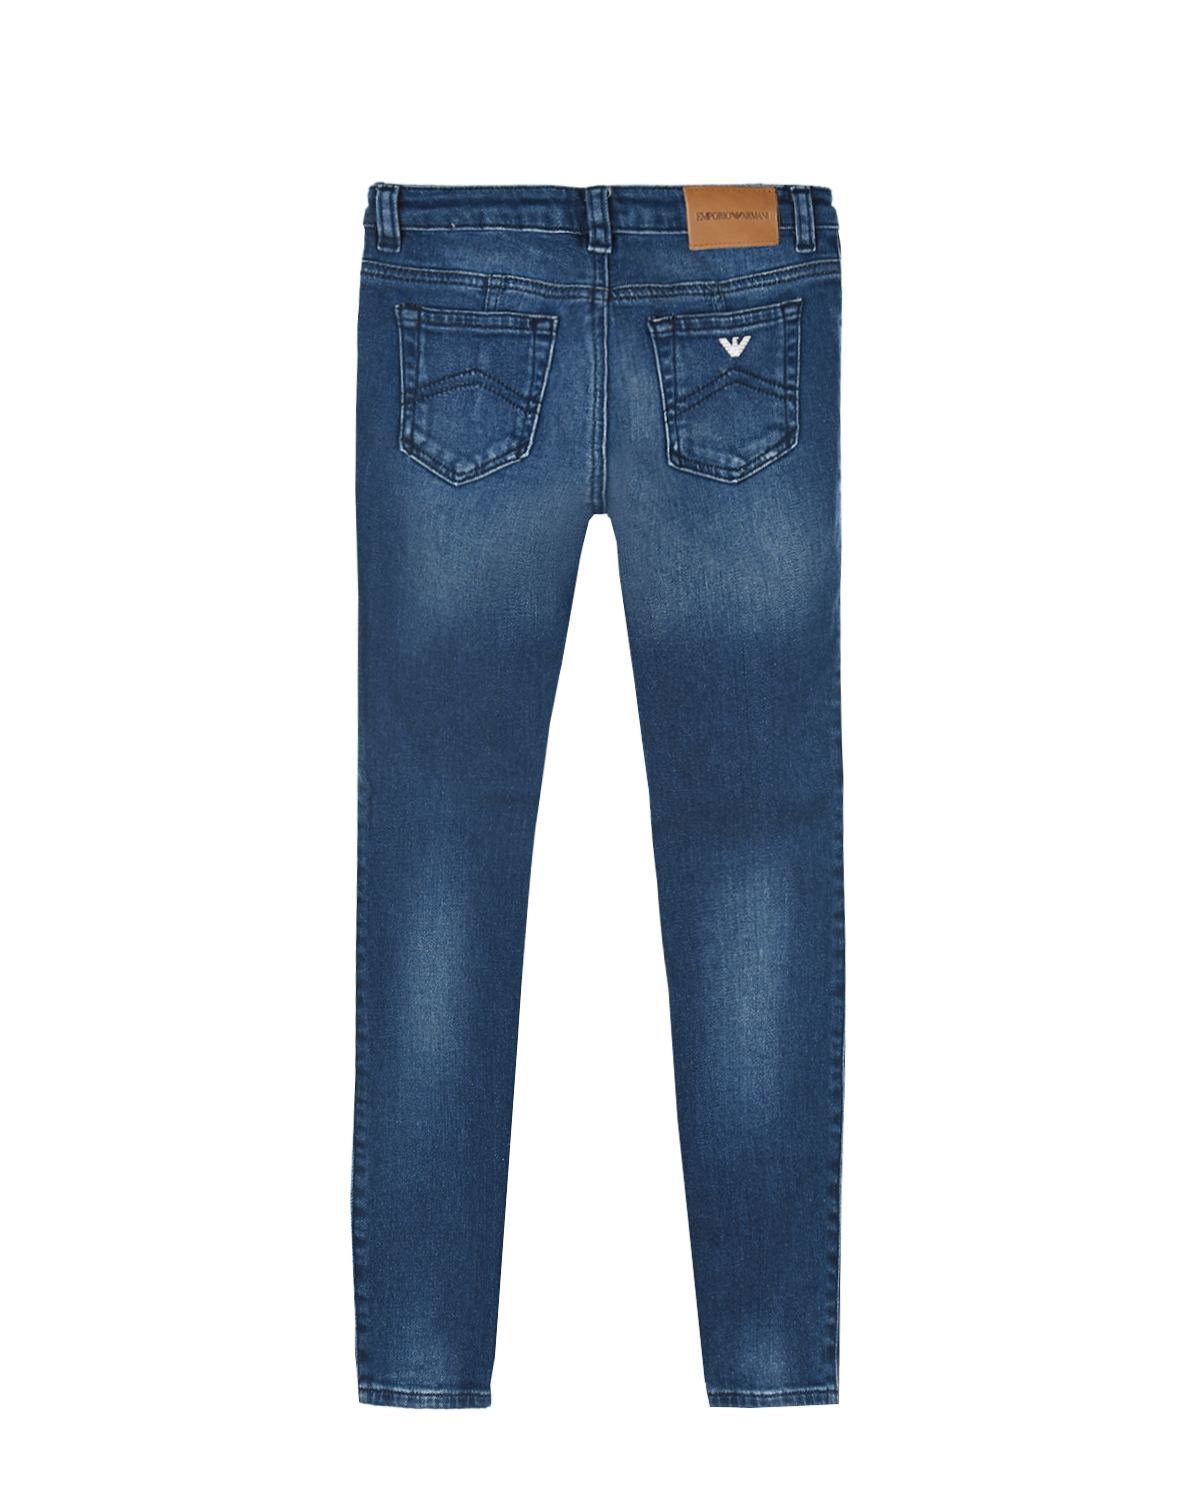 Базовые джинсы голубого цвета Emporio Armani детские - фото 2